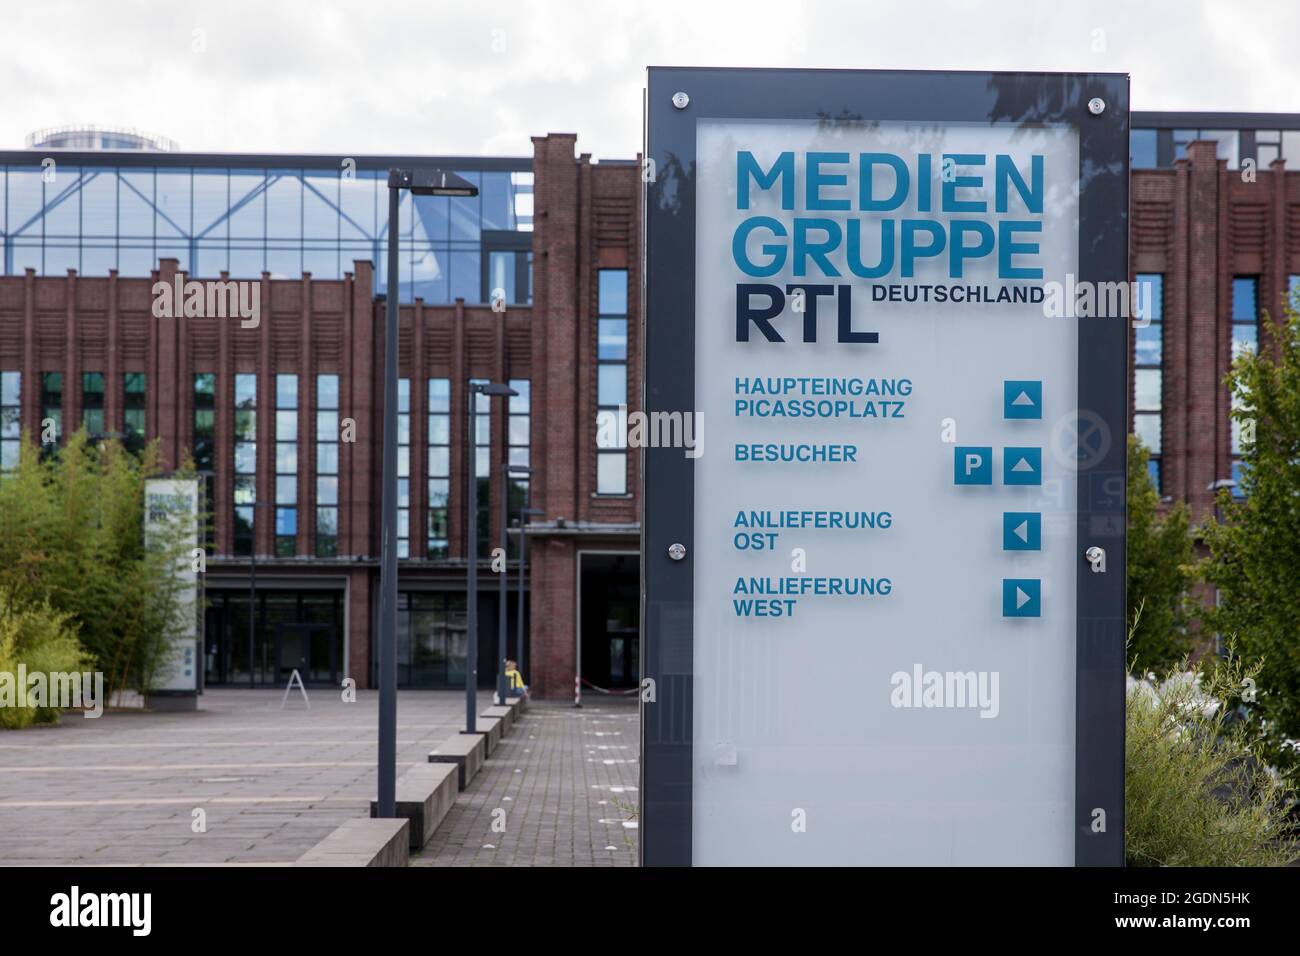 headquarters of the Media Group RTL Germany at Picassoplatz in Deutz, Cologne, Germany.  Hauptsitz der Mediengruppe RTL Deutschland am Picassoplatz in Stock Photo